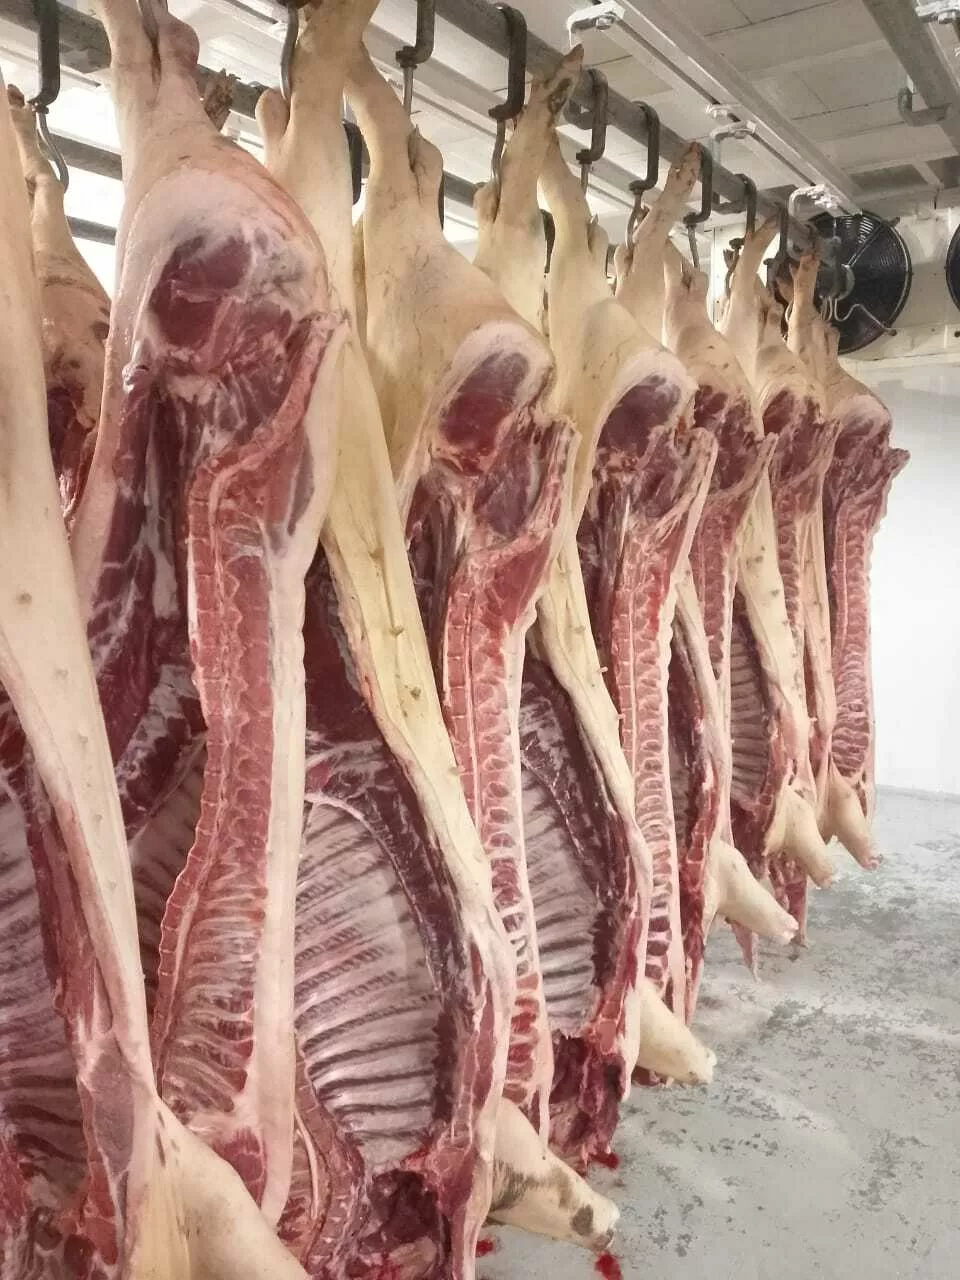 мясо свинины оптом и в розницу в Краснодаре и Краснодарском крае 10